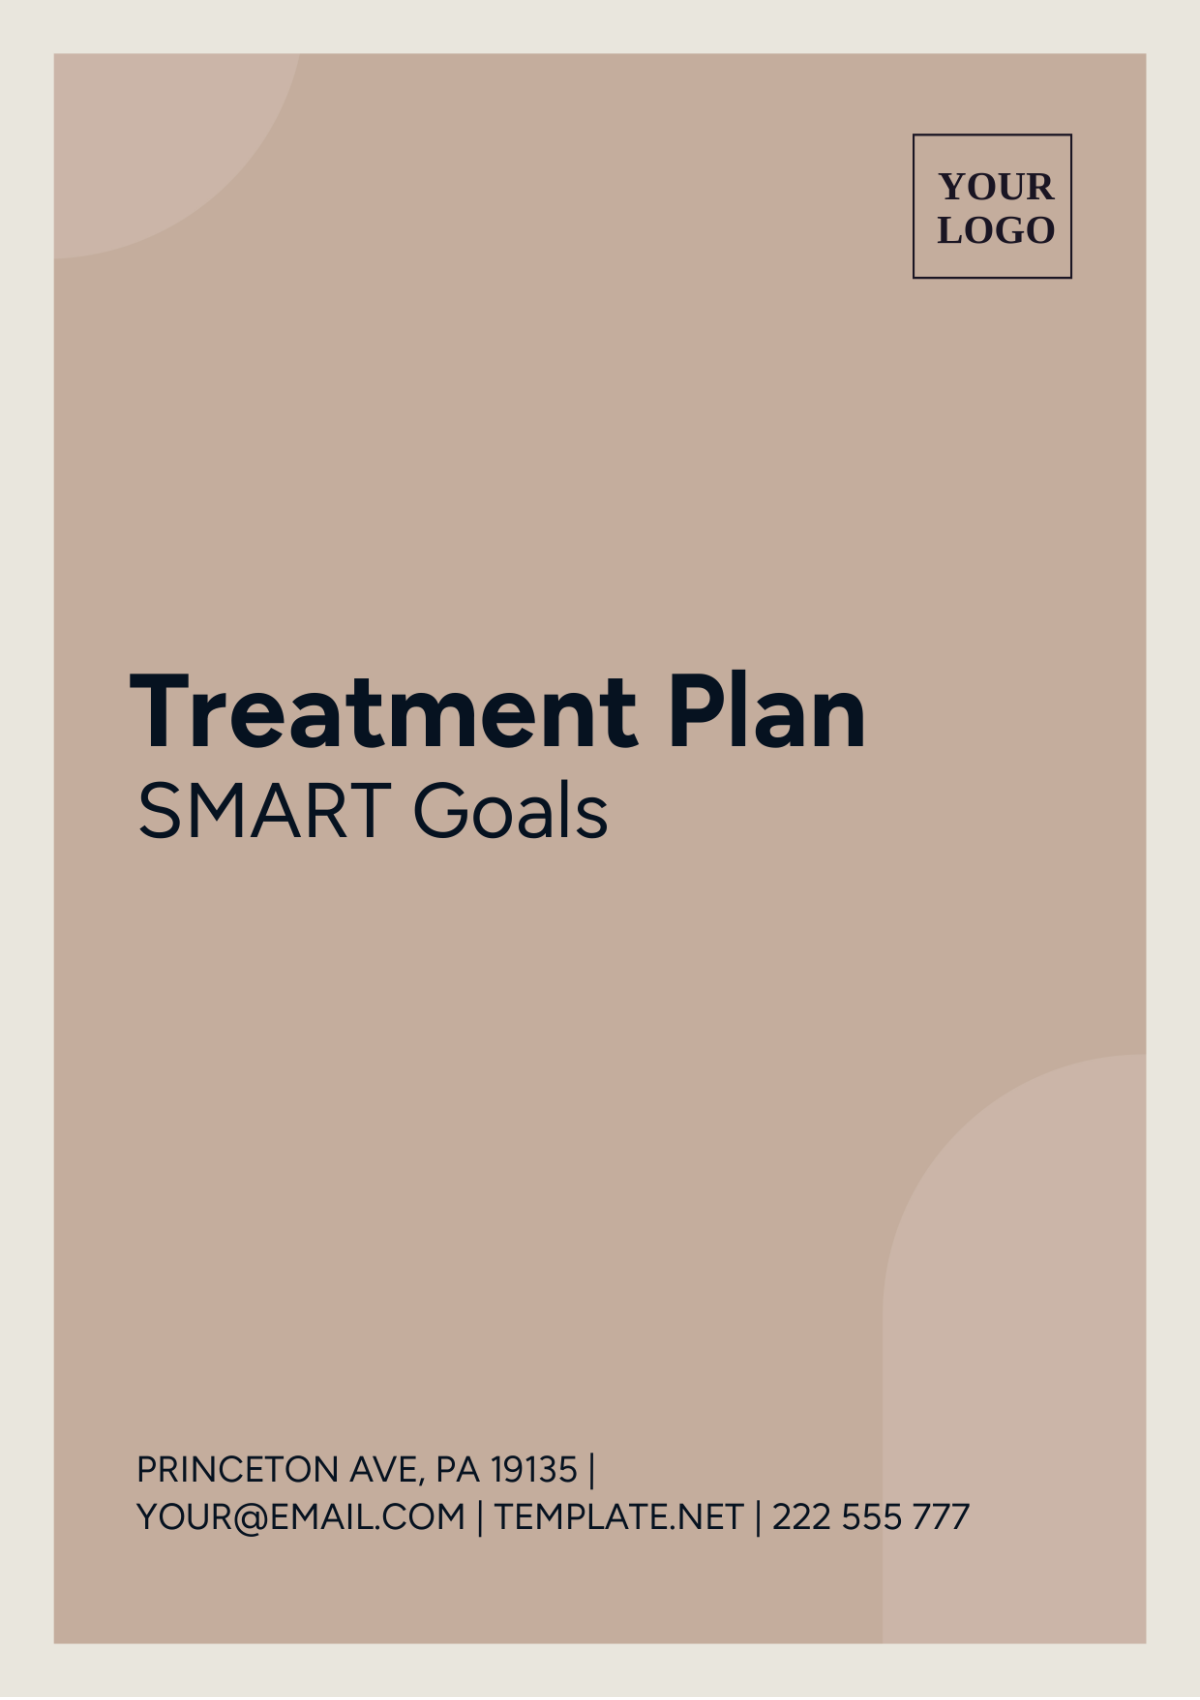 Treatment Plan SMART Goals Template